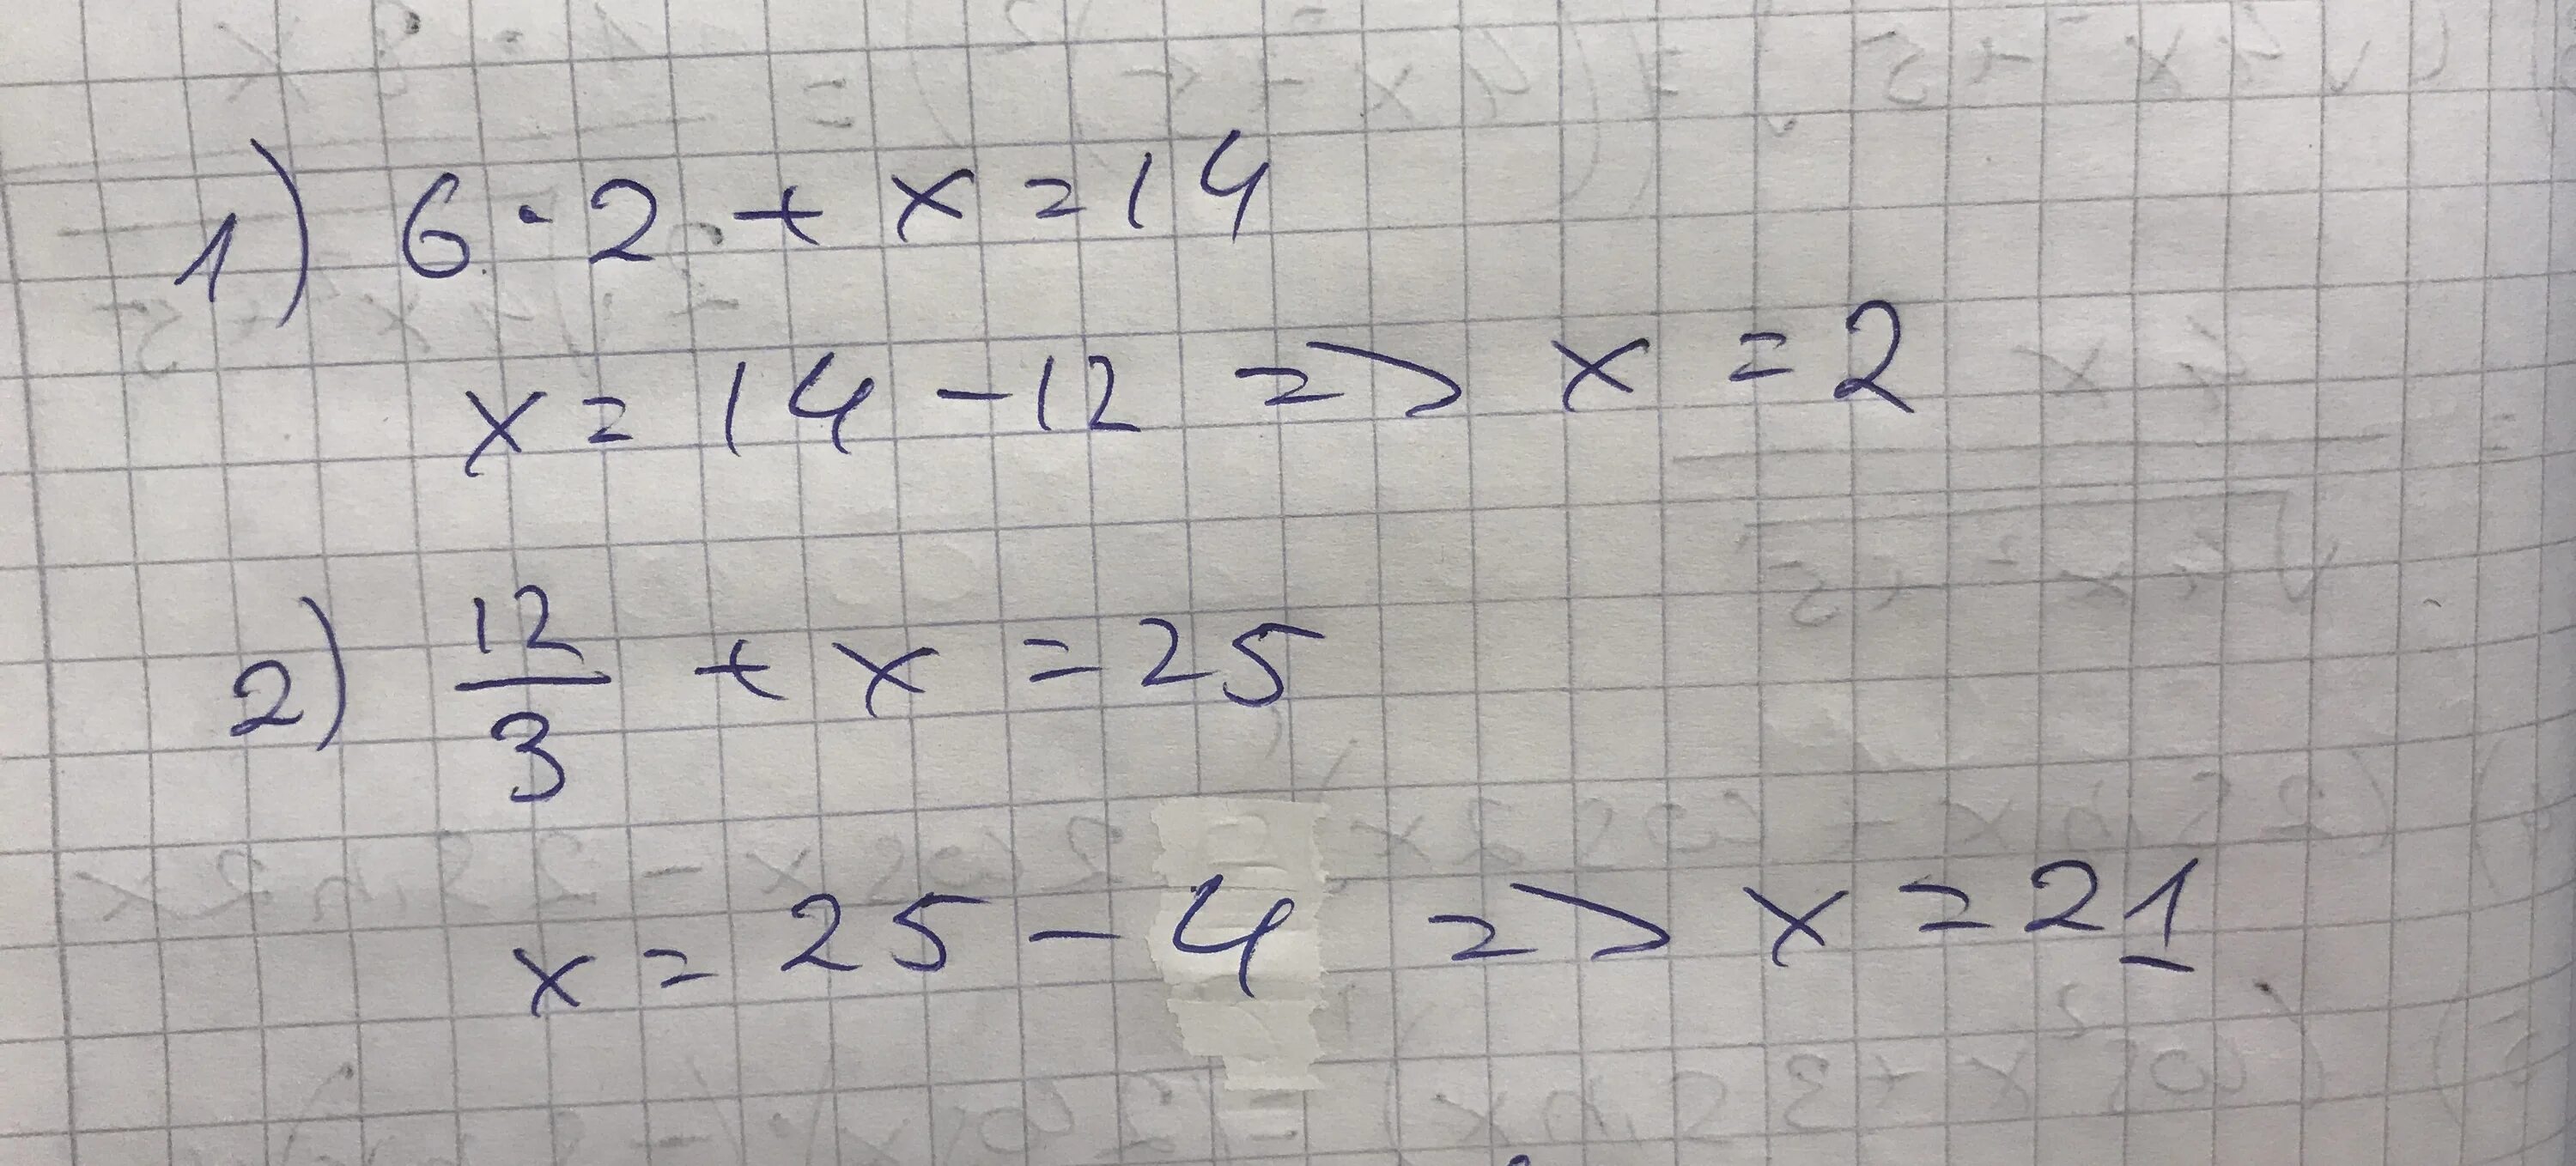 Решение уравнения 12 разделить на Икс равно 3. Уравнение Икс разделить на 3 равно 6. Минус 2 Икс деленное на 5 и минус 2 Икс деленное на 3. Икс равно. 18 2 разделить на 12 6